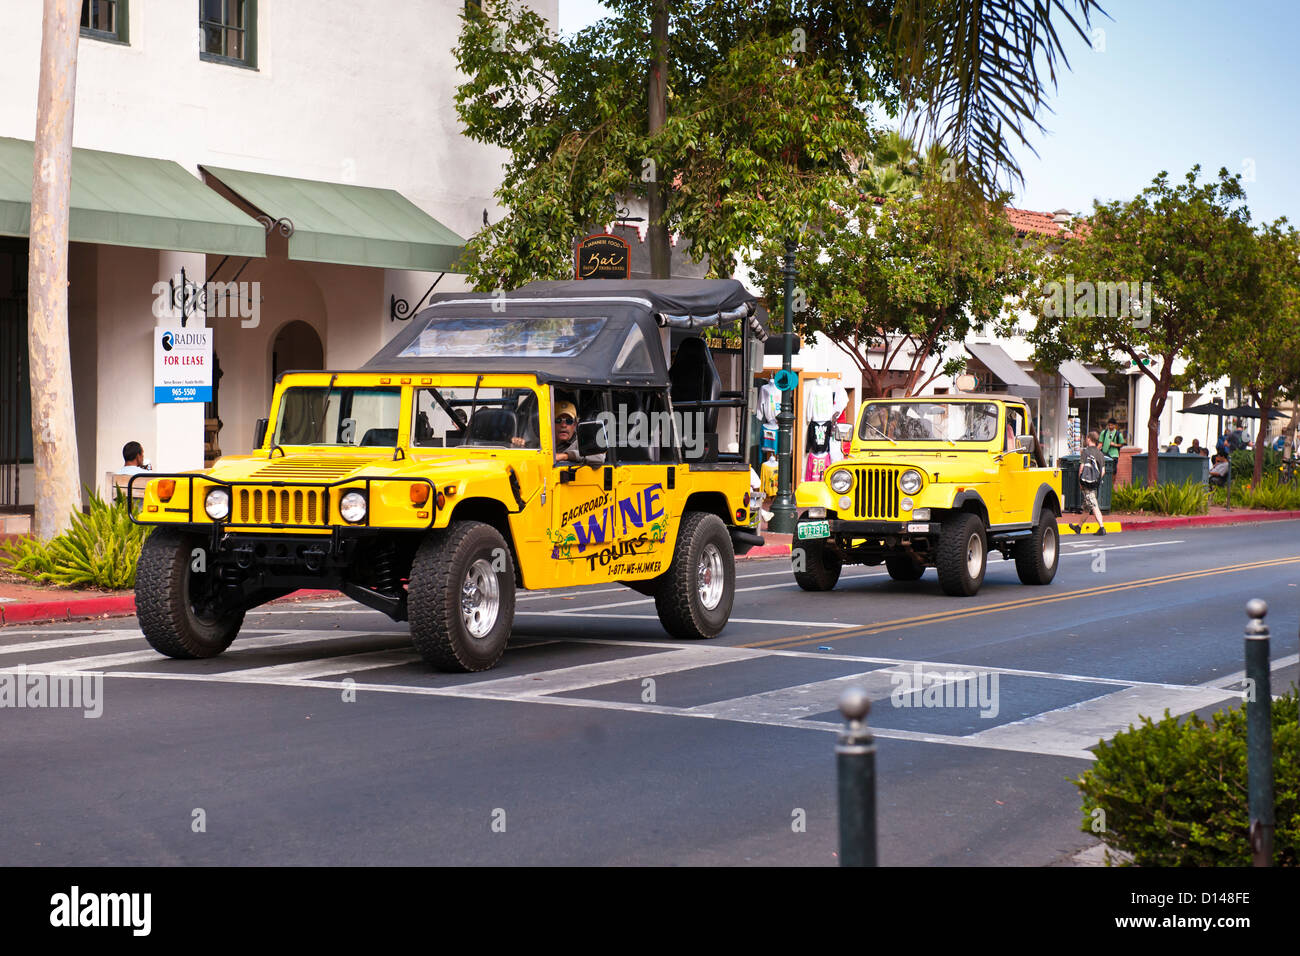 Yellow Hummer and yellow Jeep, Santa Barbara Stock Photo